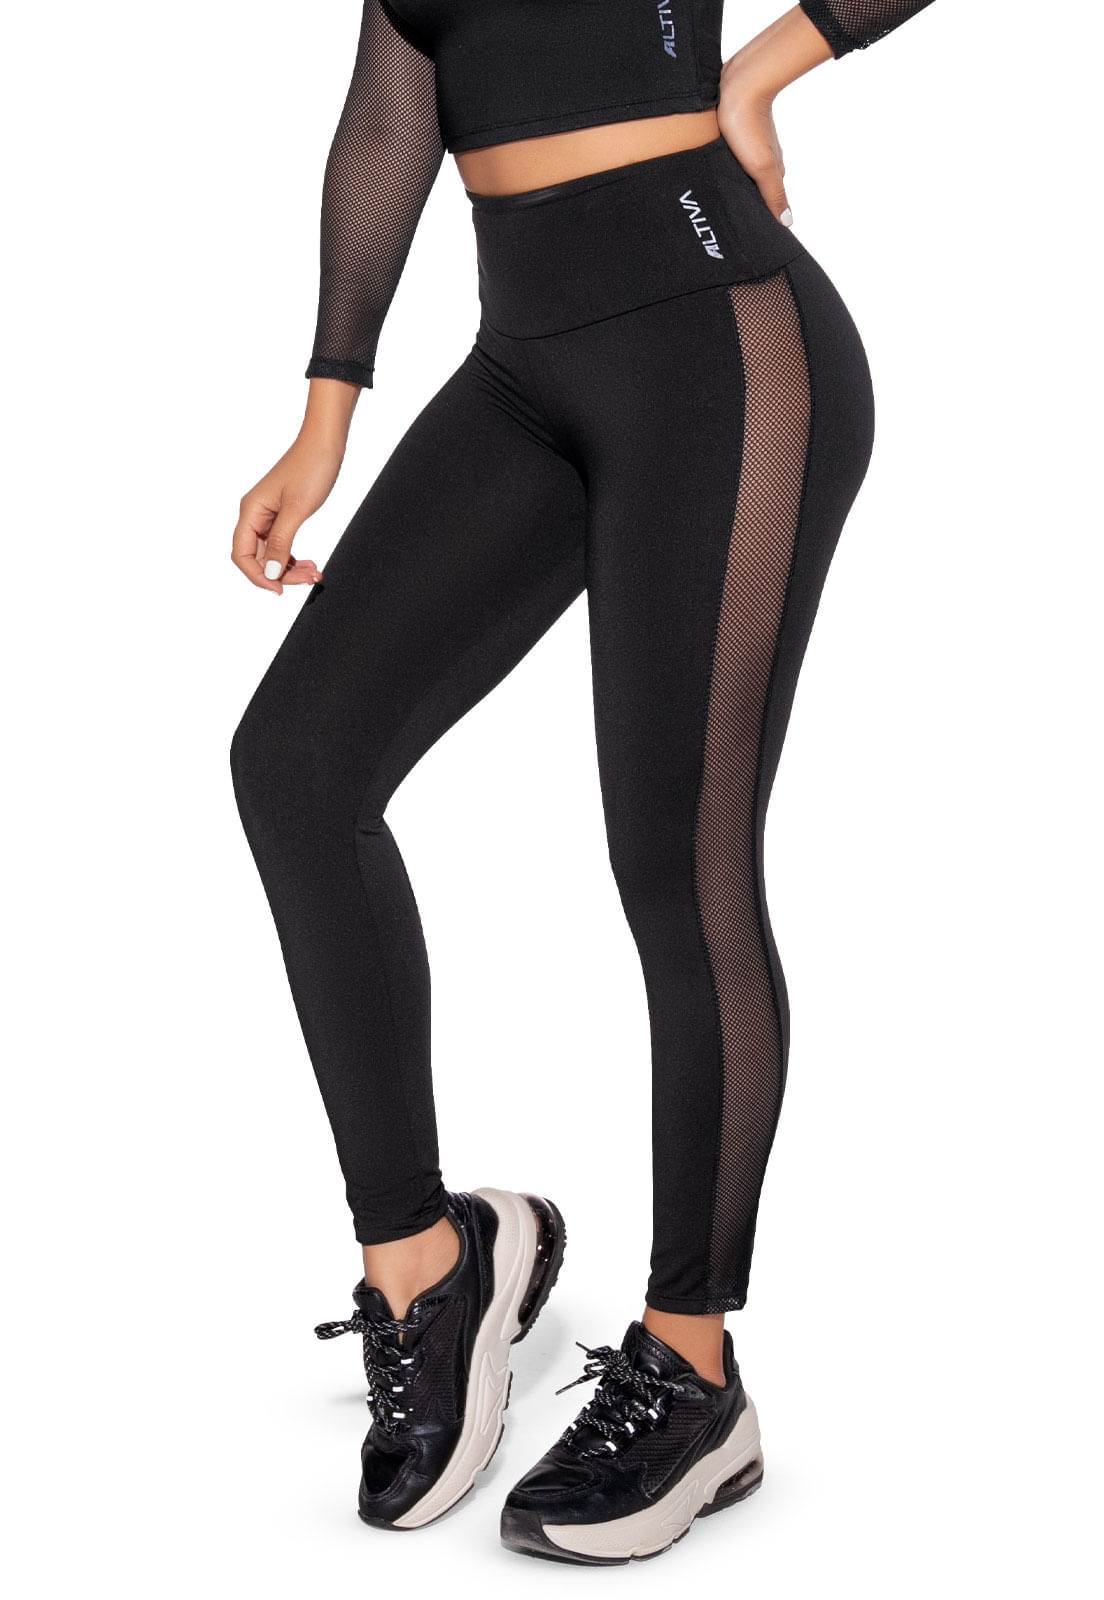 Pantalón tipo leggins color negro, para dama, marca COSMOS - Agaval